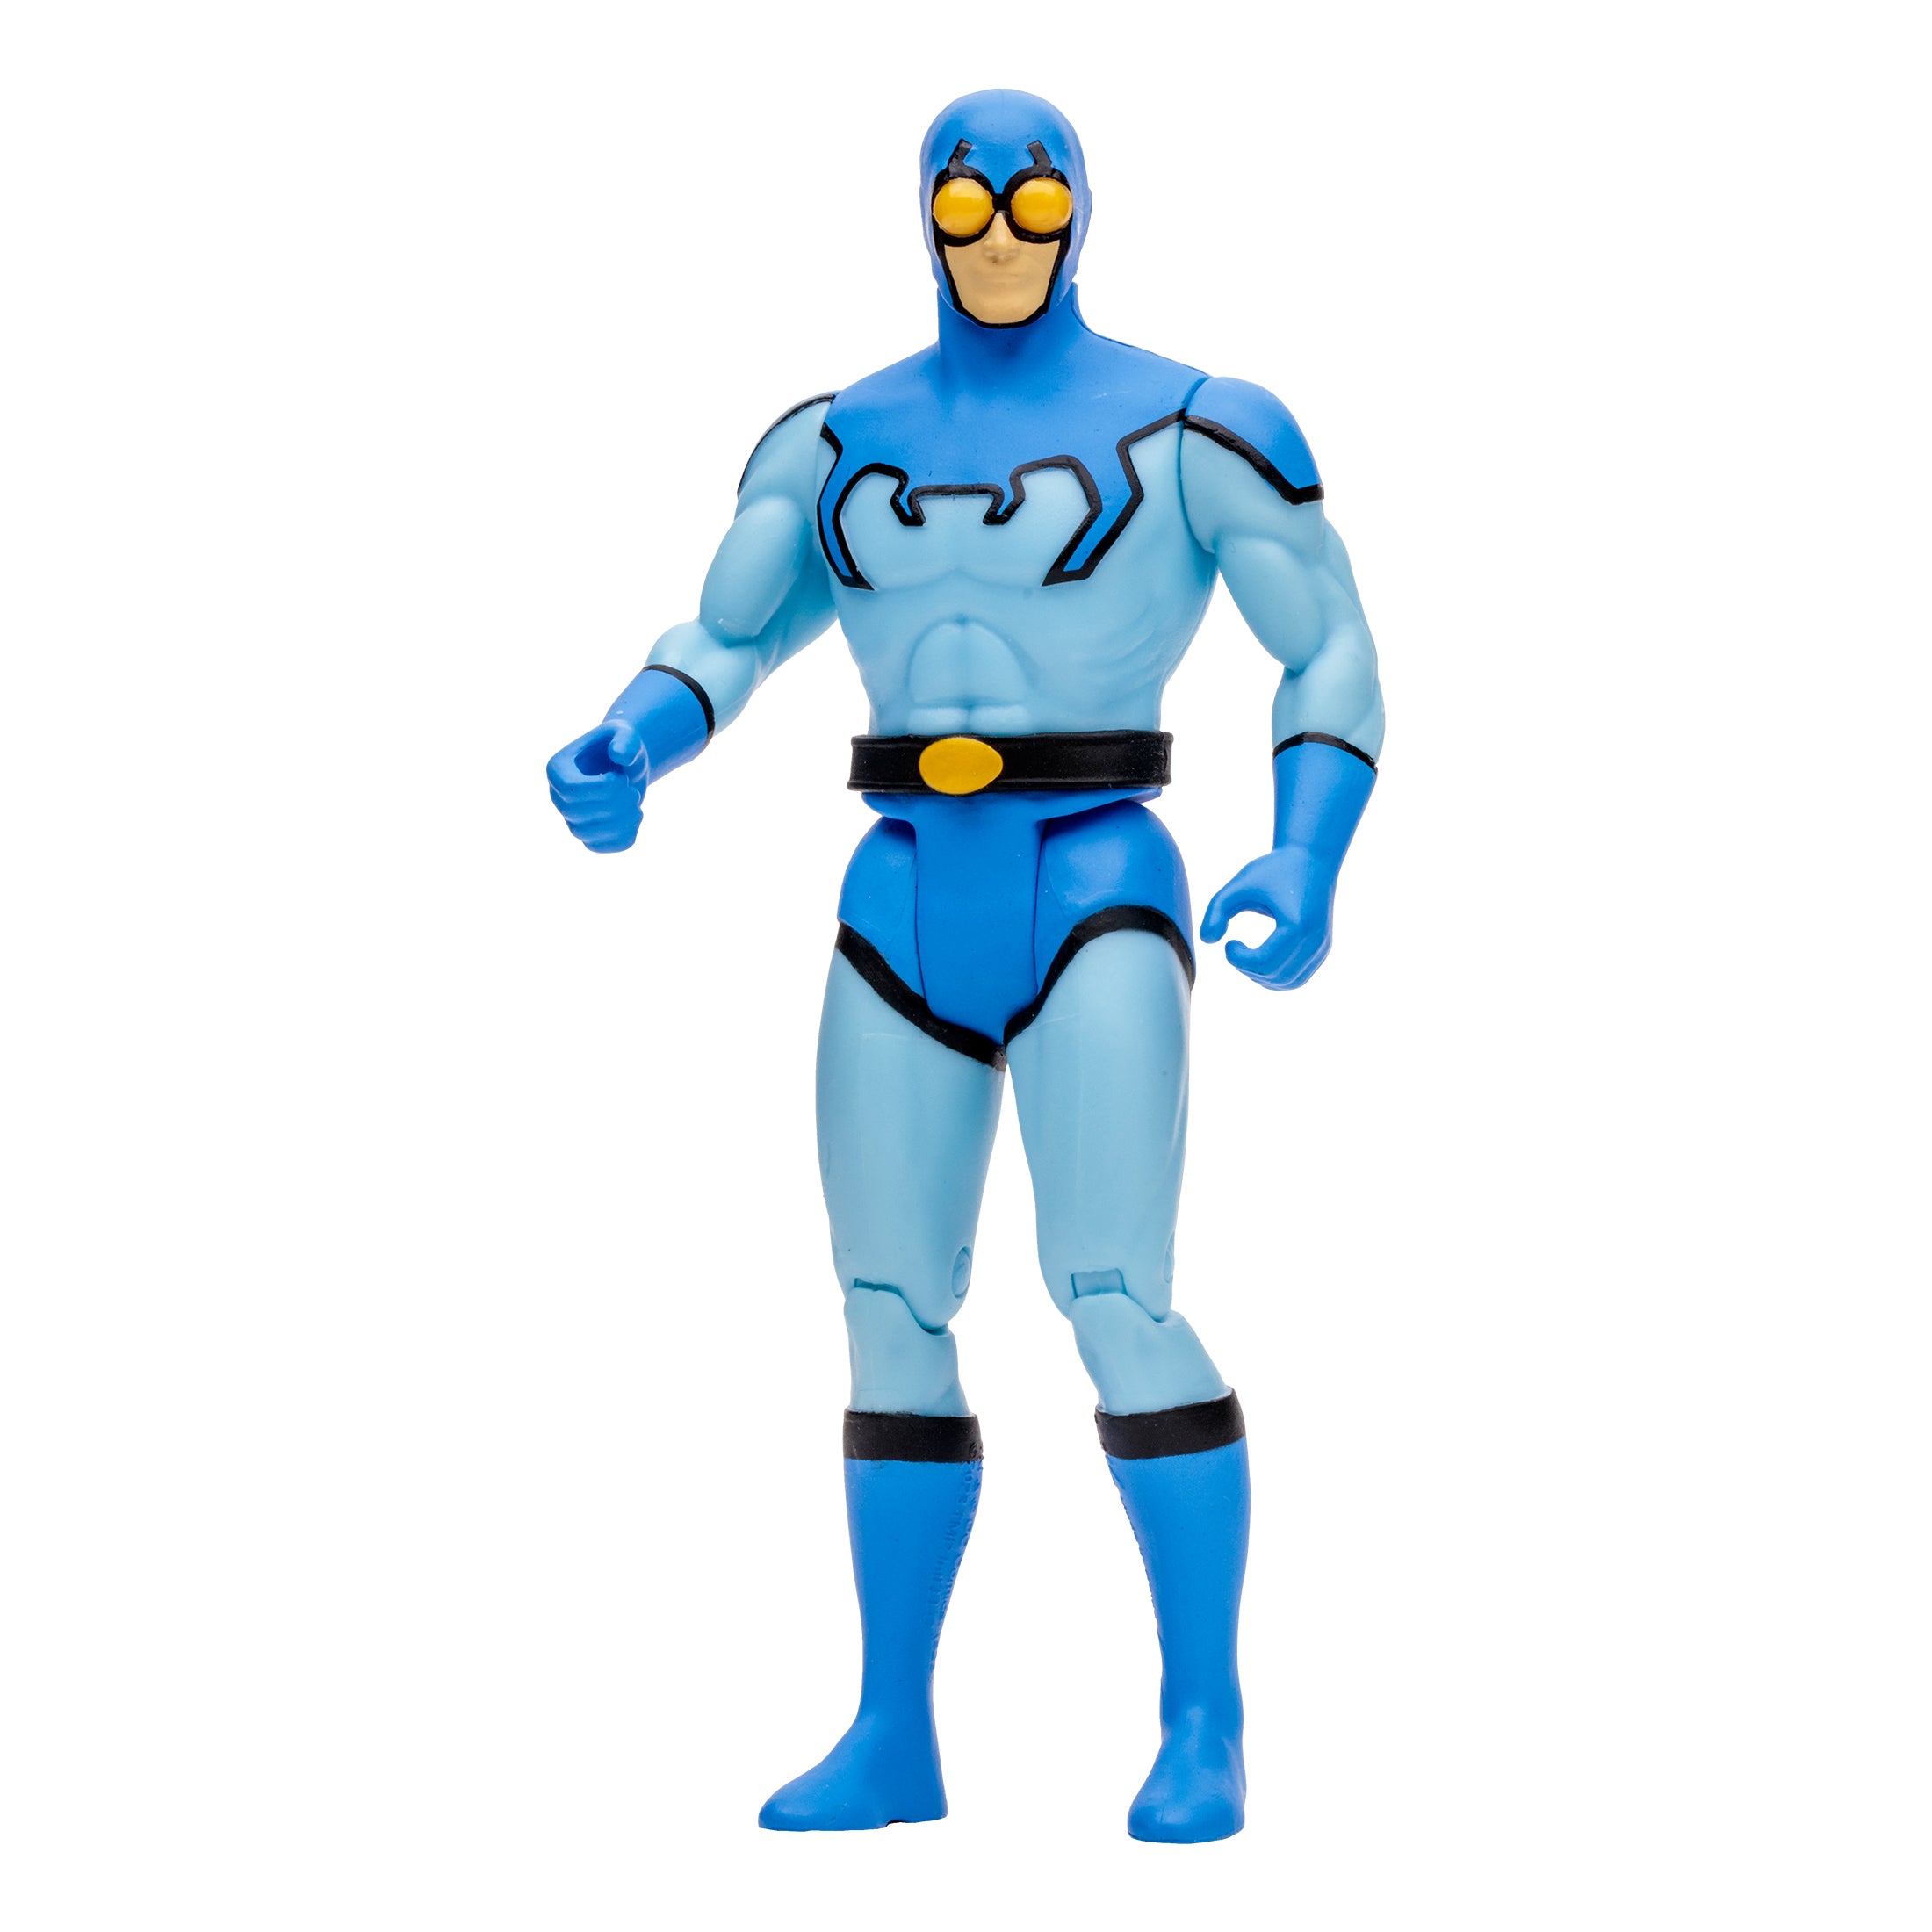 DC Direct Super Powers Figura de Accion: DC Comics Justicie League International - Blue Beetle 4.5 Pulgadas